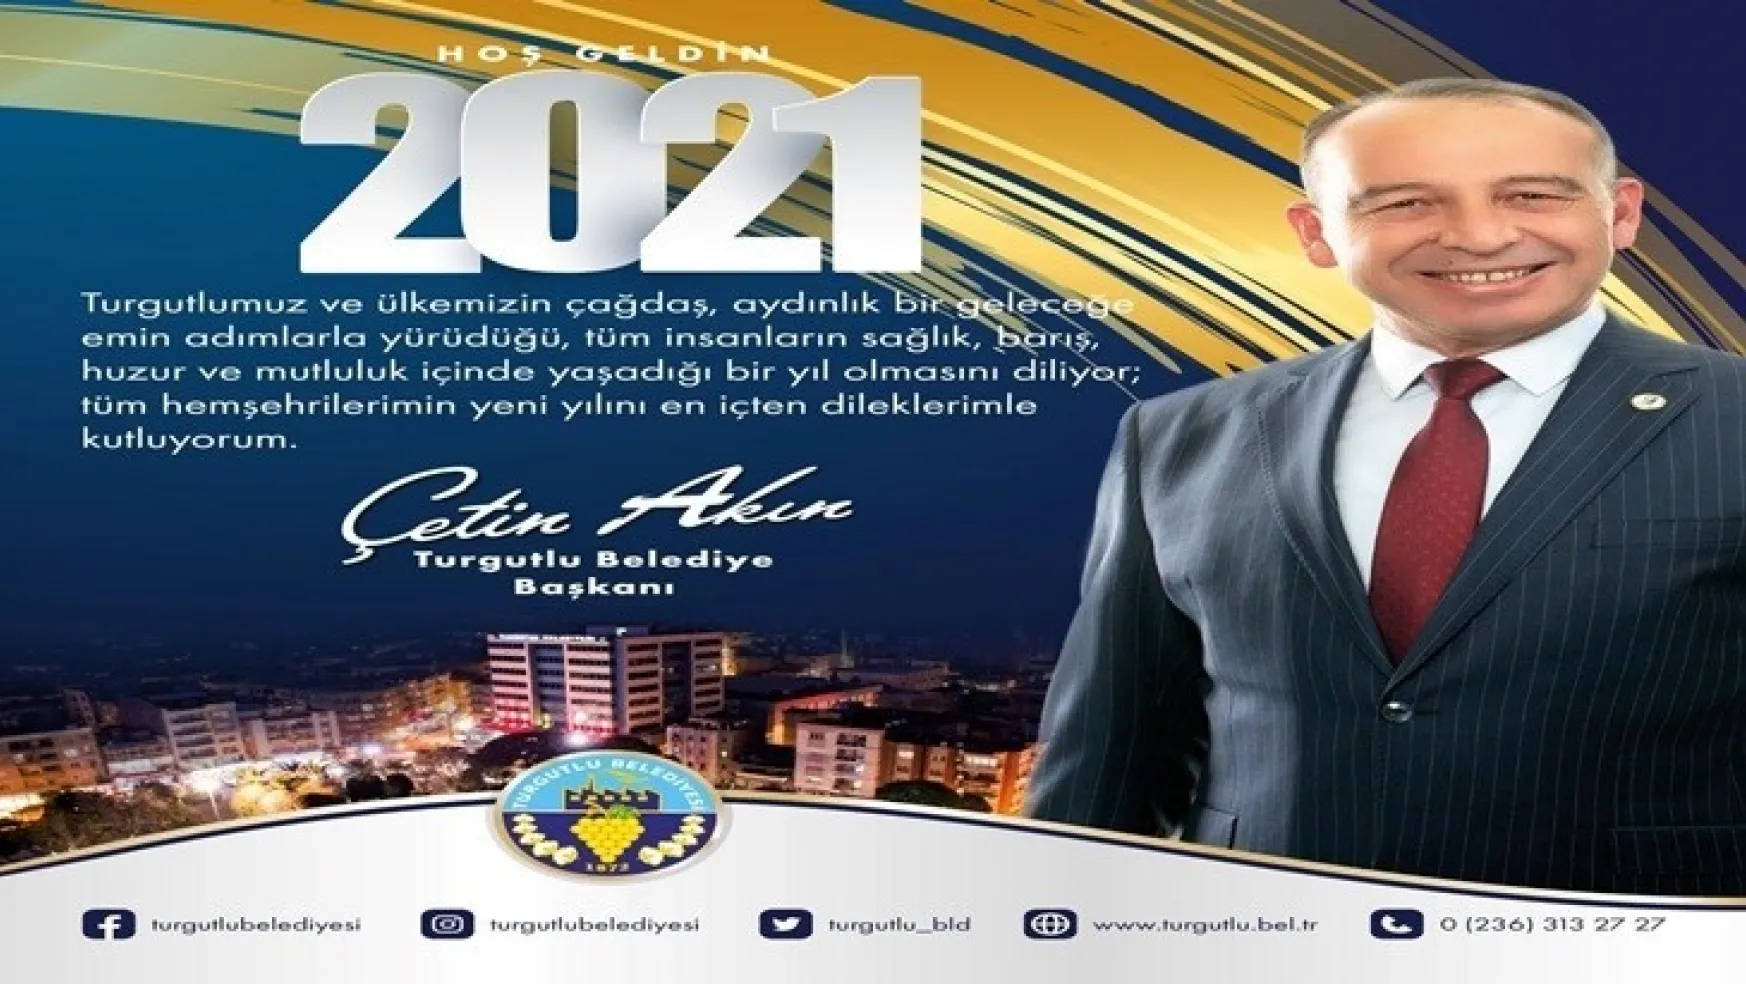 Başkan Çetin Akın yeni yıl mesajında '2021 yılını umutla, sevinçle karşılayacağız' Dedi